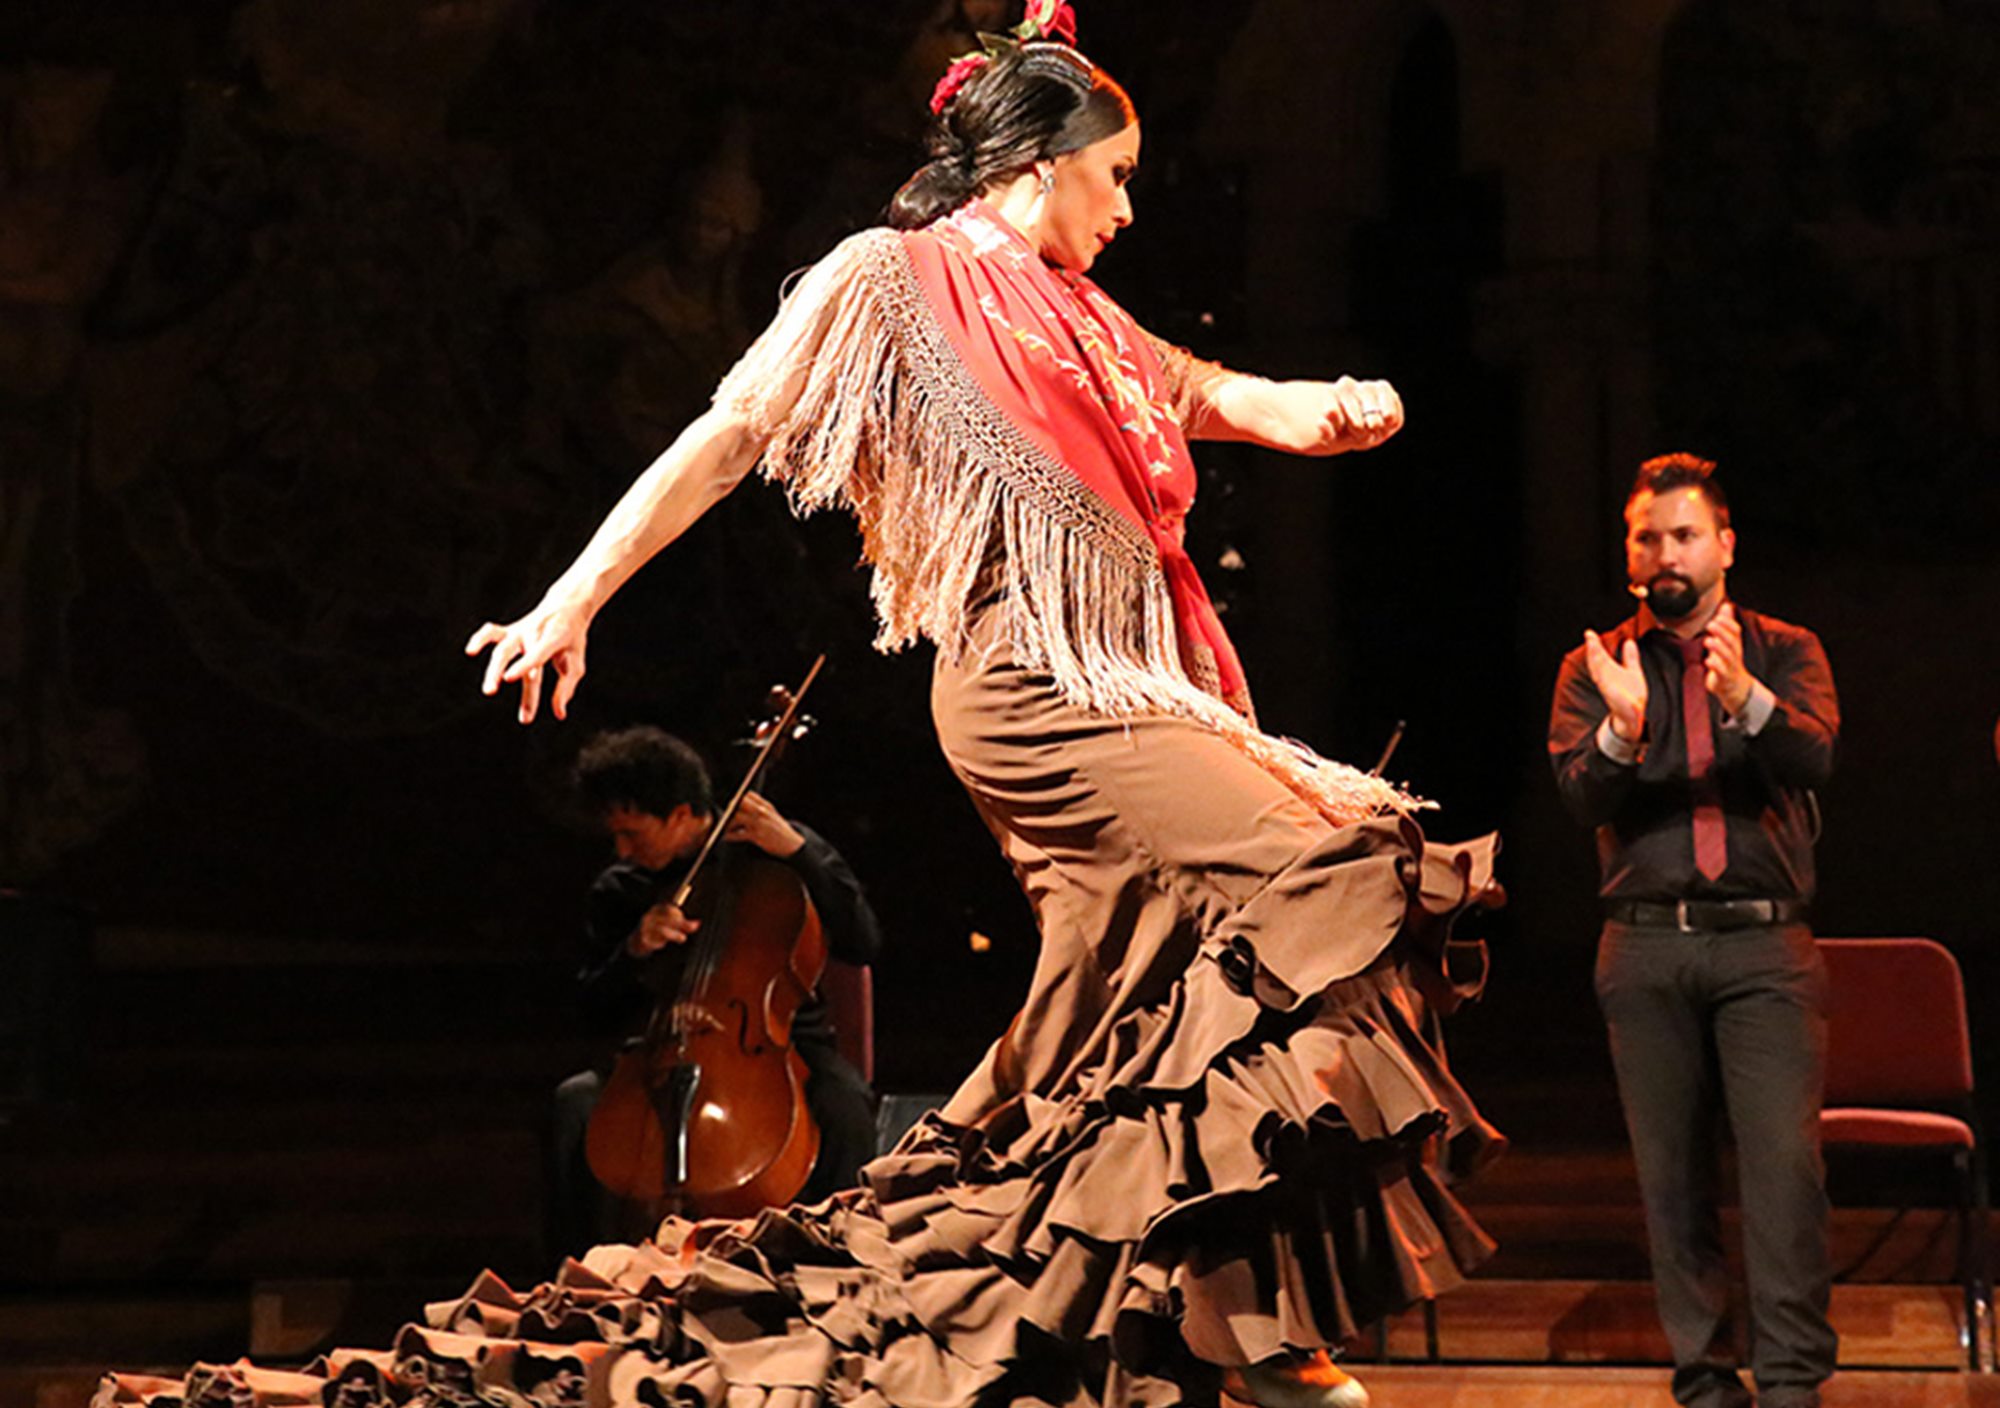 kaufen buchung besucht Touren Fahrkarte karte karten Oper Flamenco show in Palau de la Musica barcelona